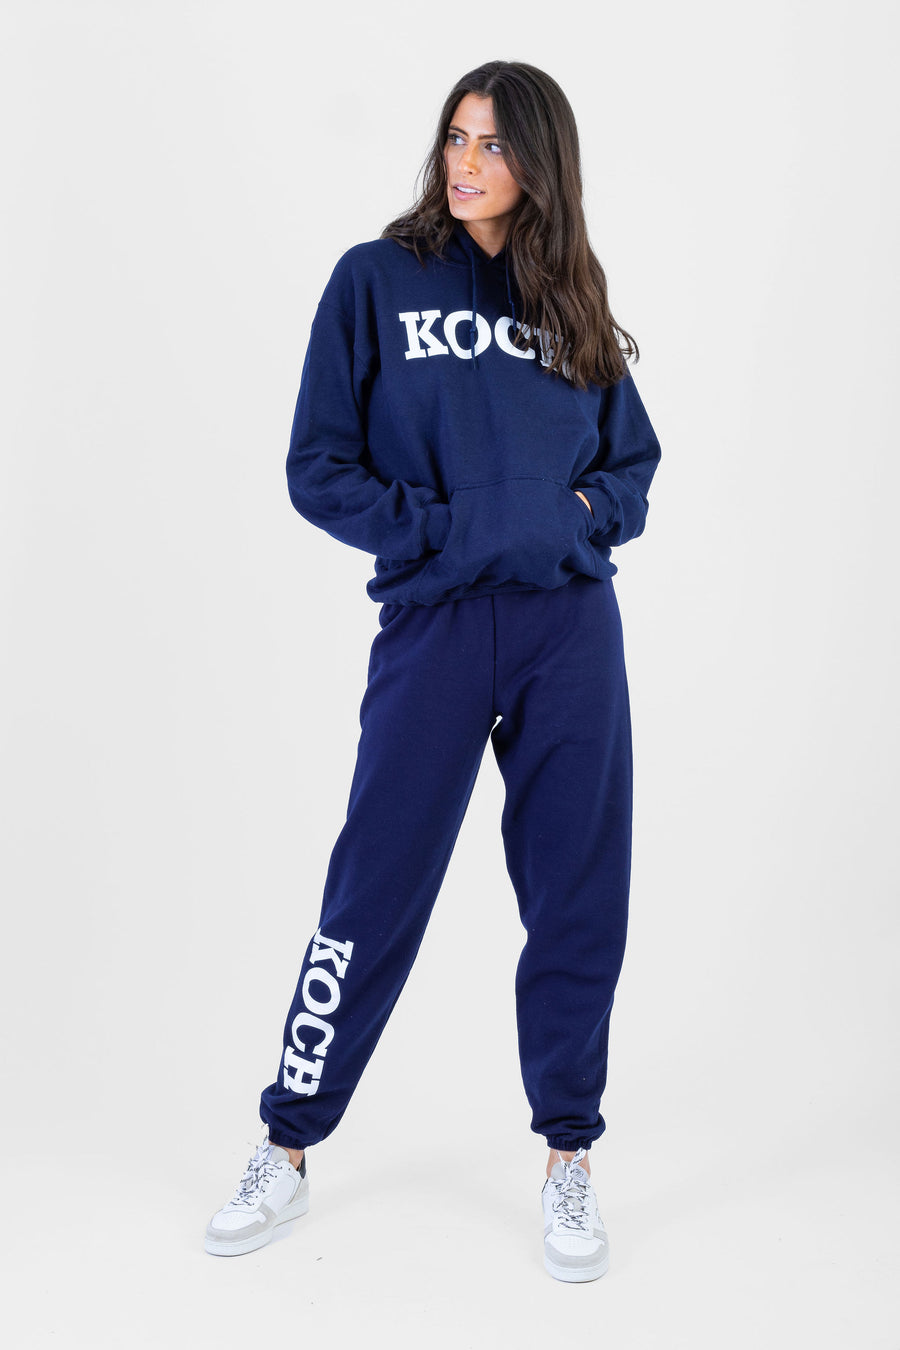 KOCH Sweatsuit Navy *Limited*Edition* – Shop KOCH